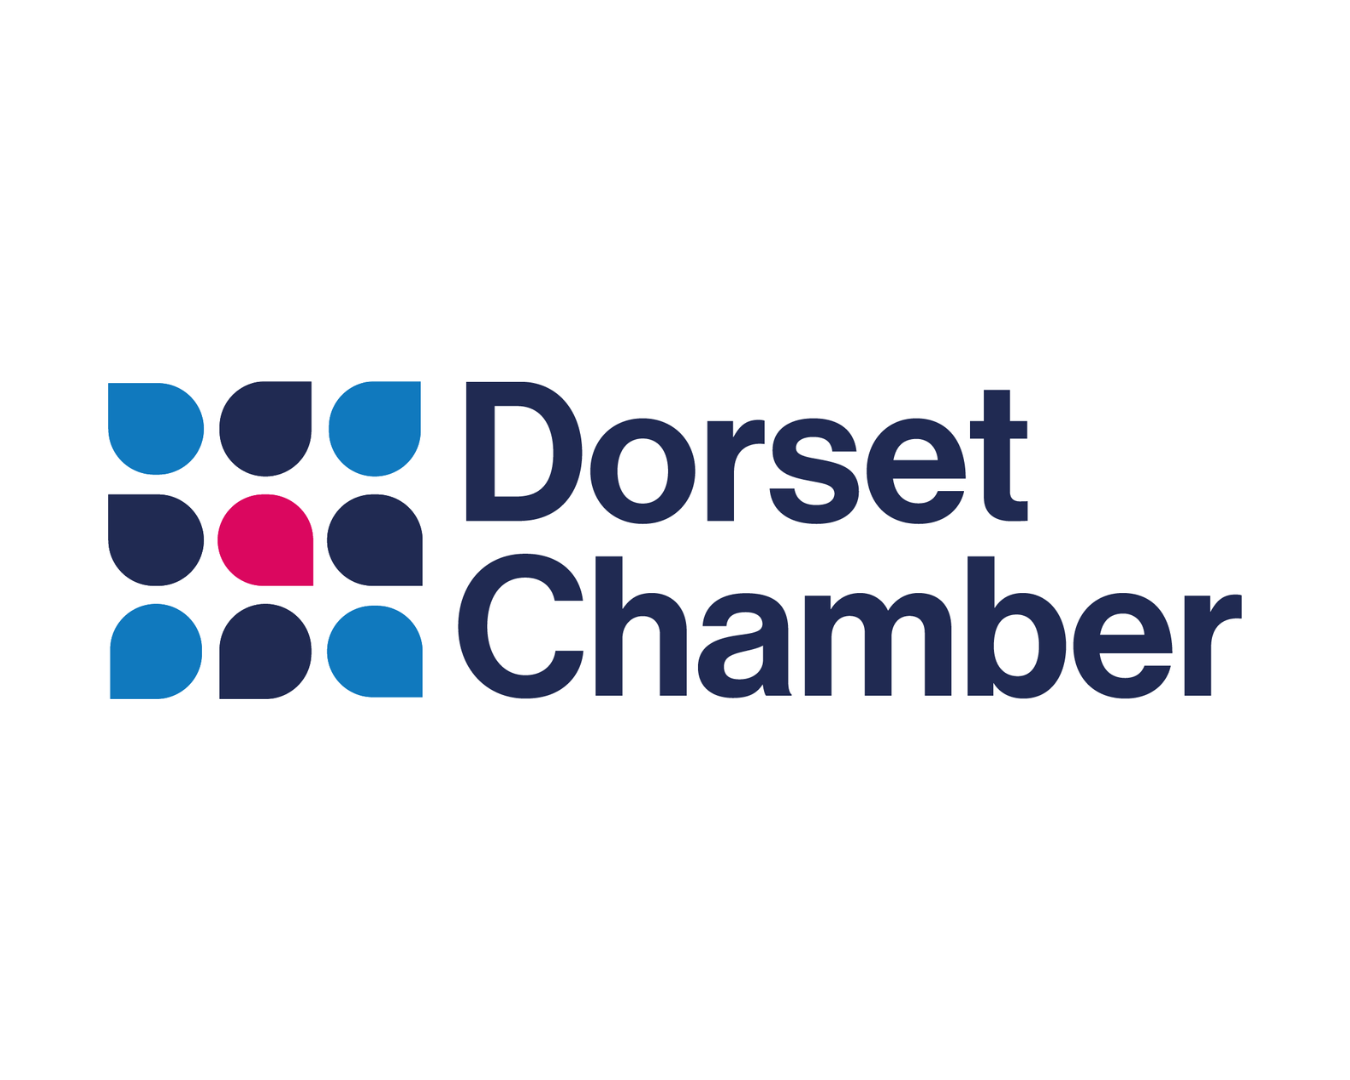 Dorset Chamber of Commerce